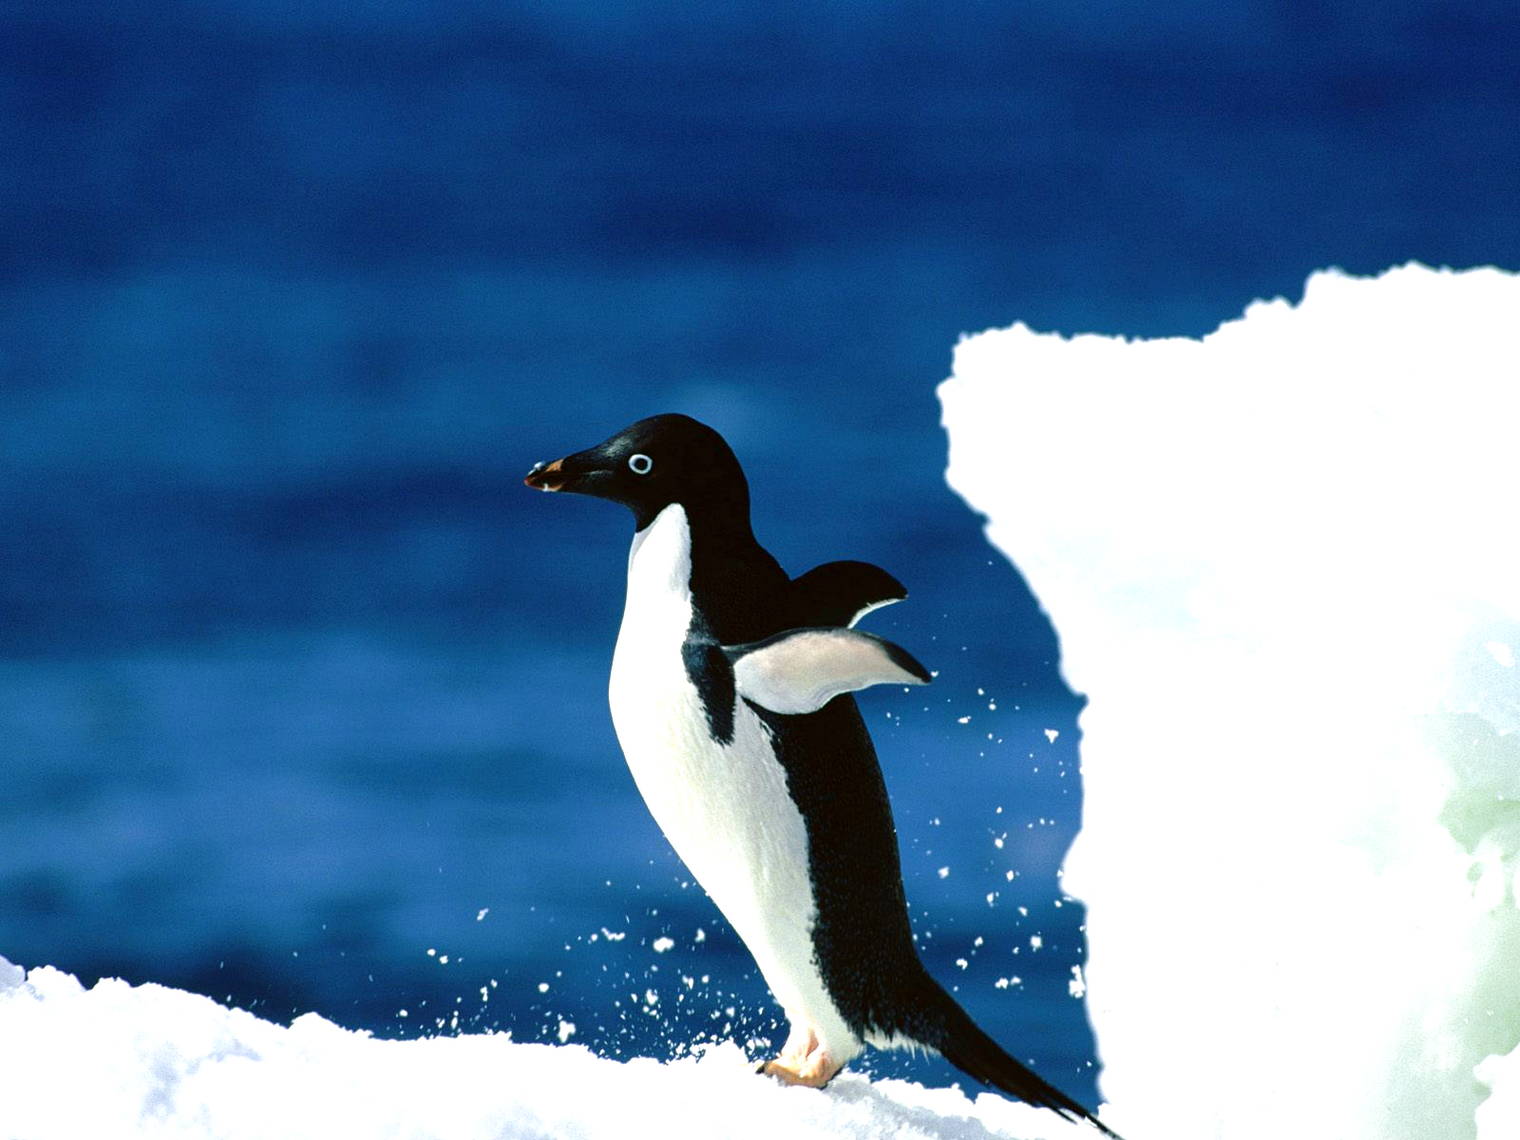  Gambar  Pinguin  Lucu  Harian Nusantara